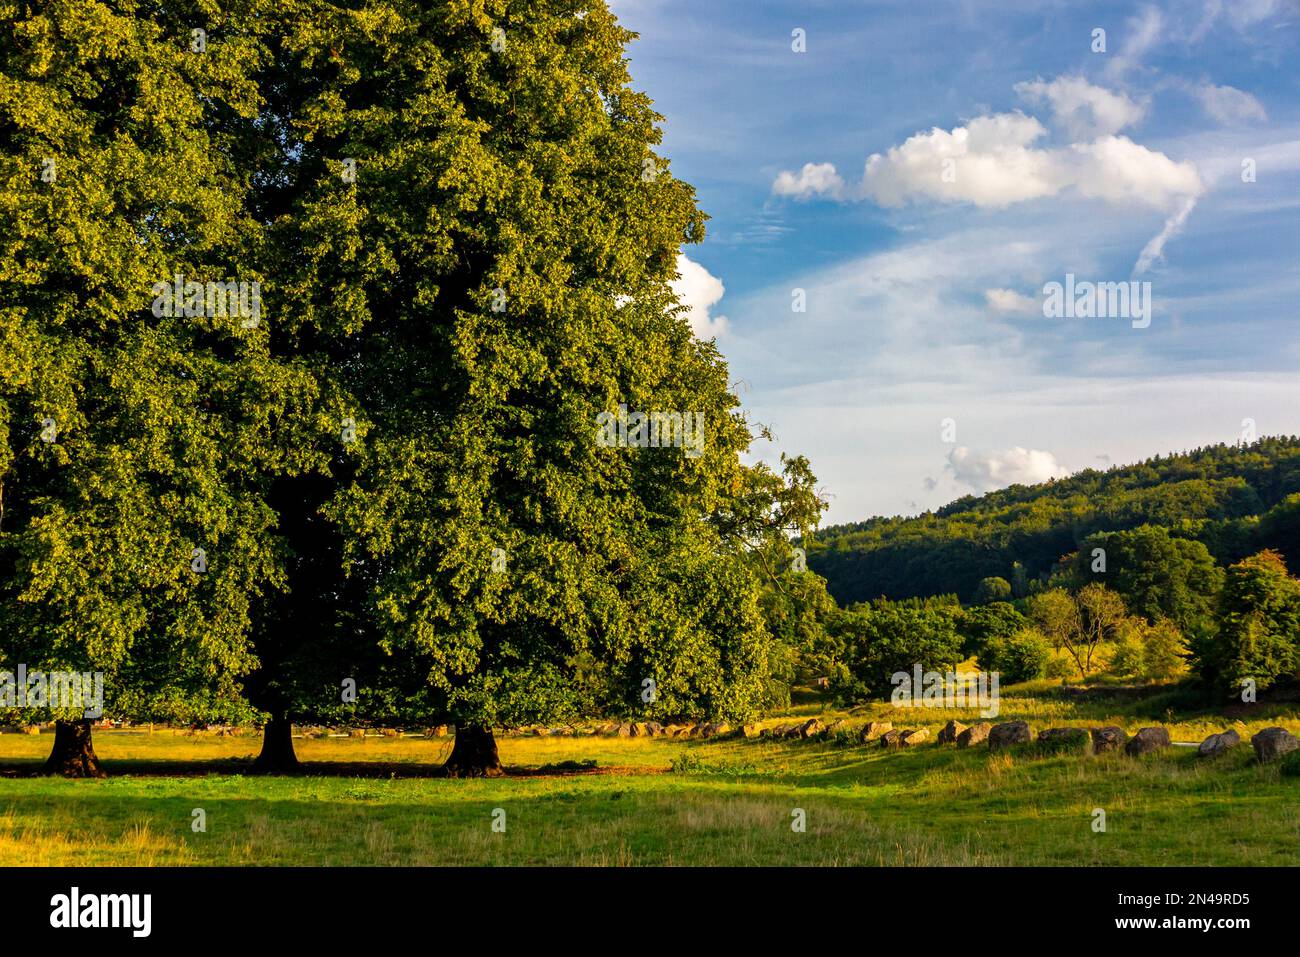 Paysage avec arbres en été à Cromford Meadows dans la Derwent Valley Derbyshire Dales Peak District Angleterre Royaume-Uni. Banque D'Images